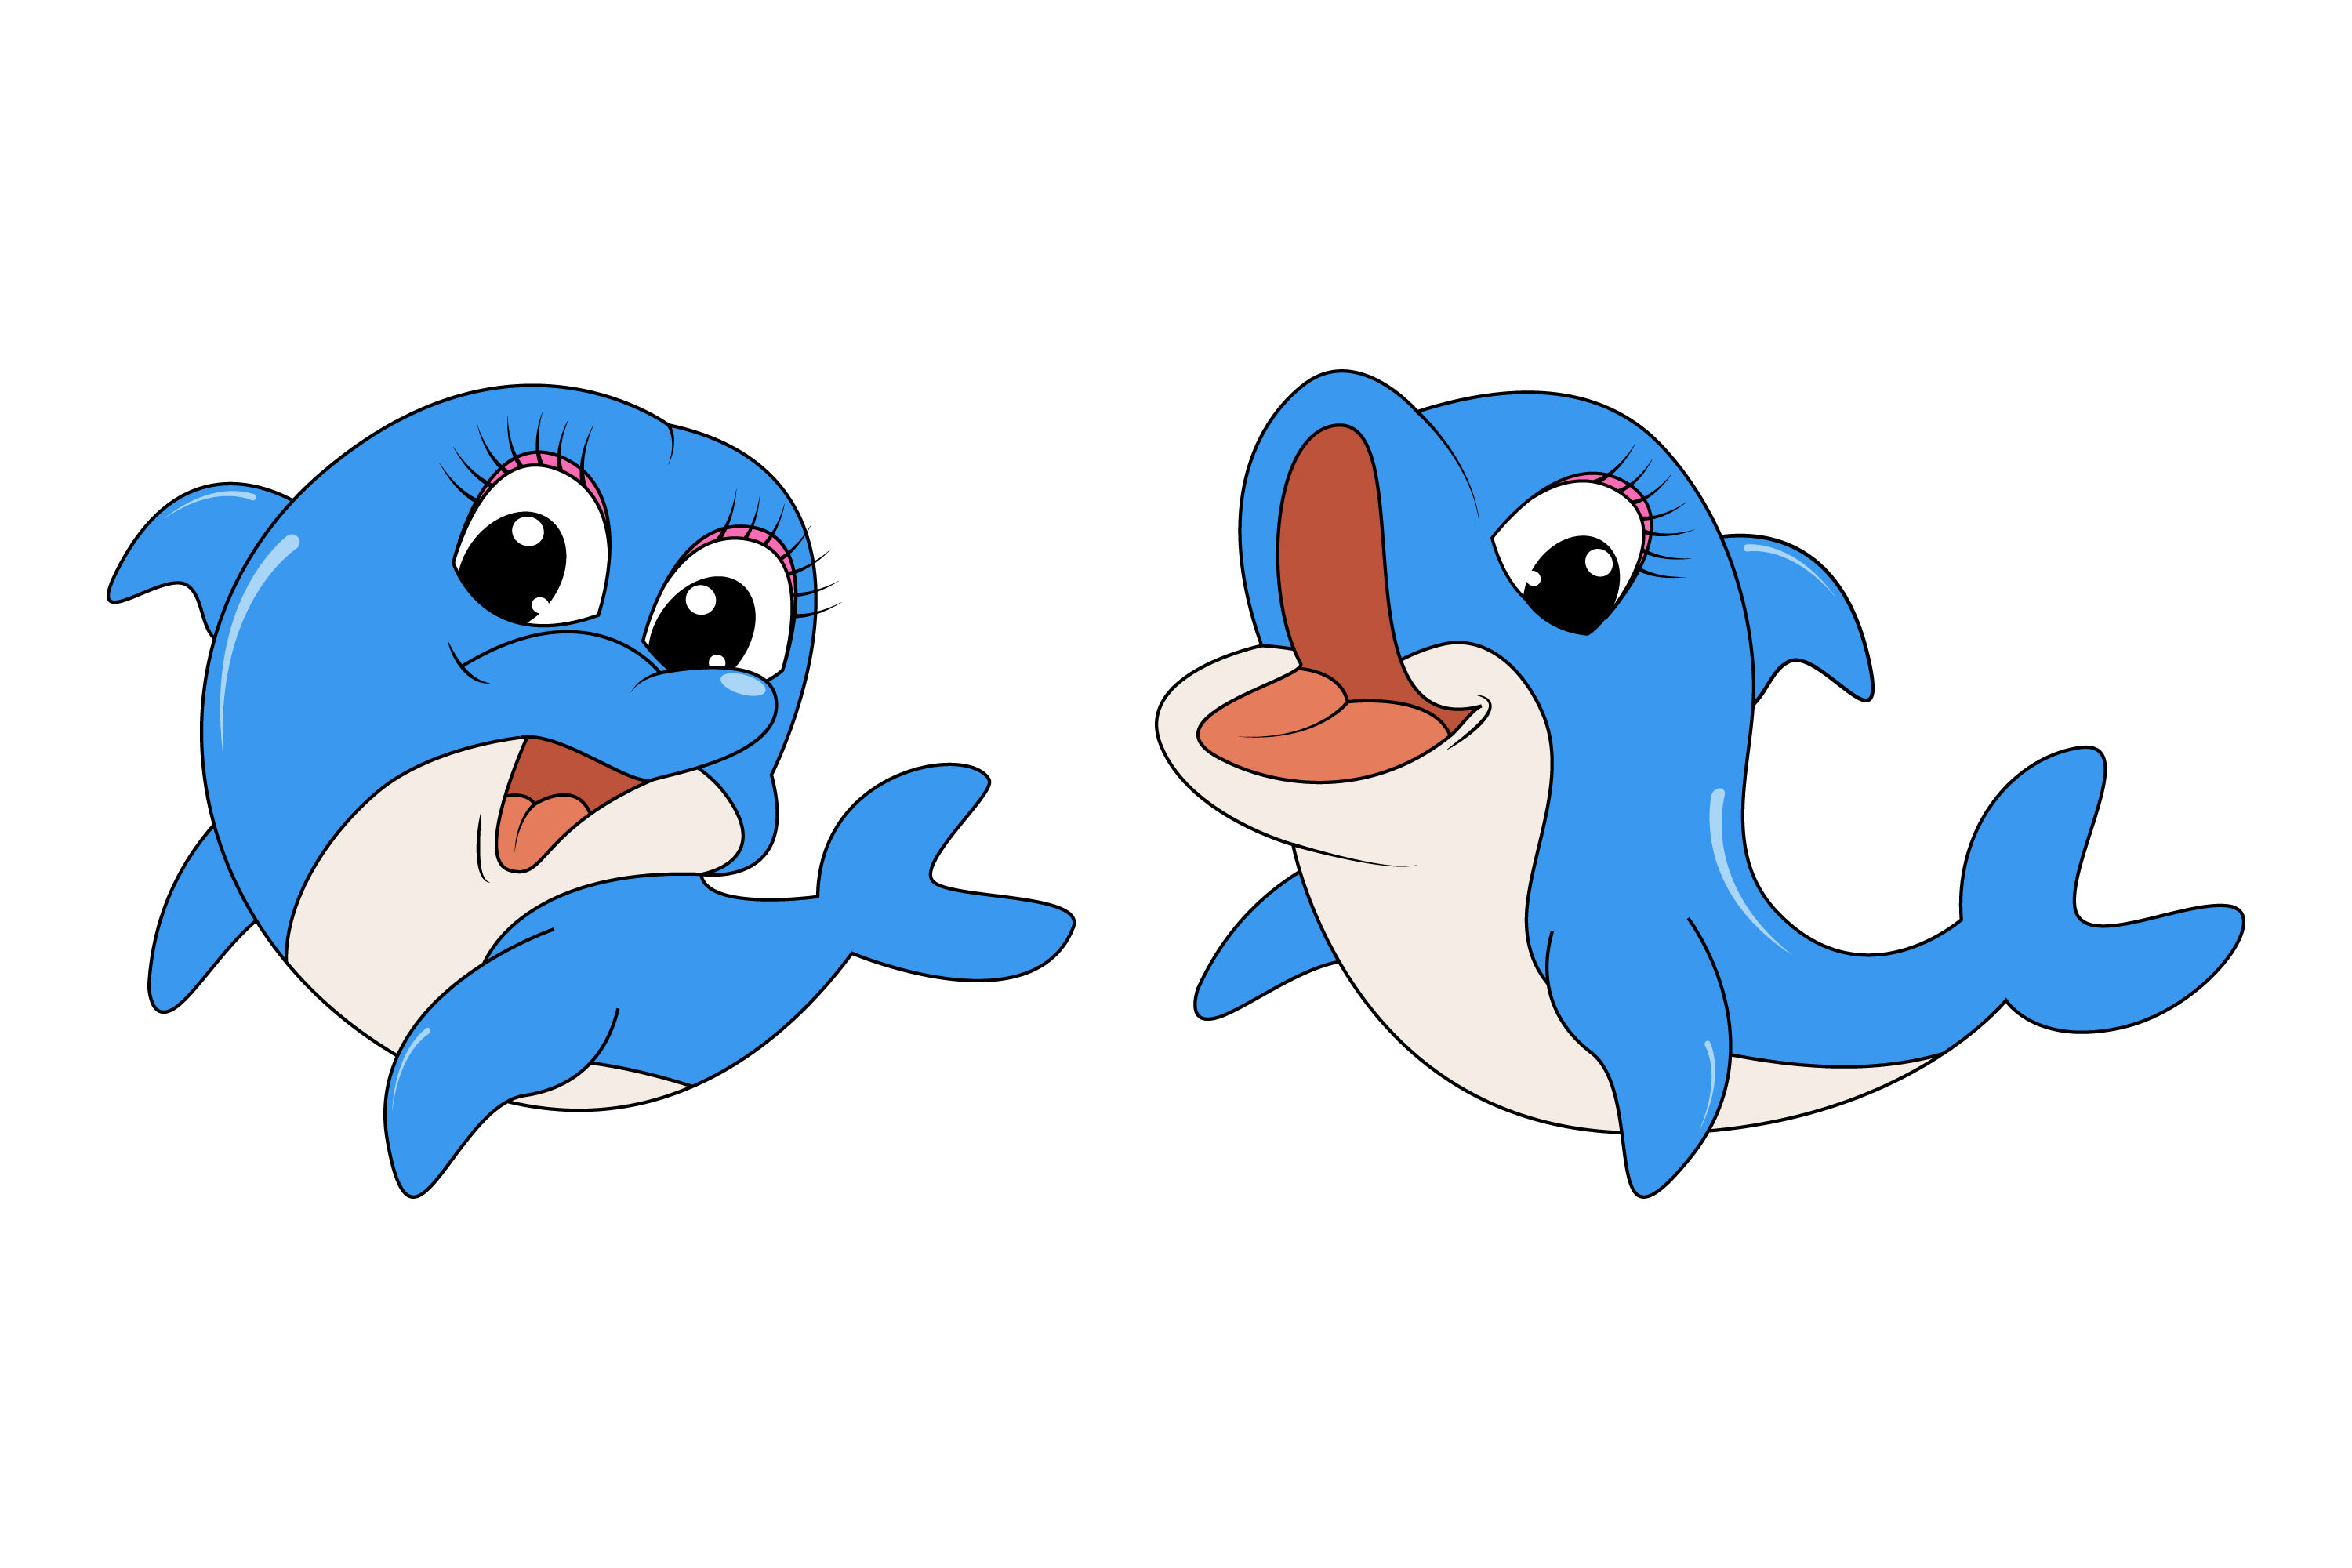 dolphin cartoon